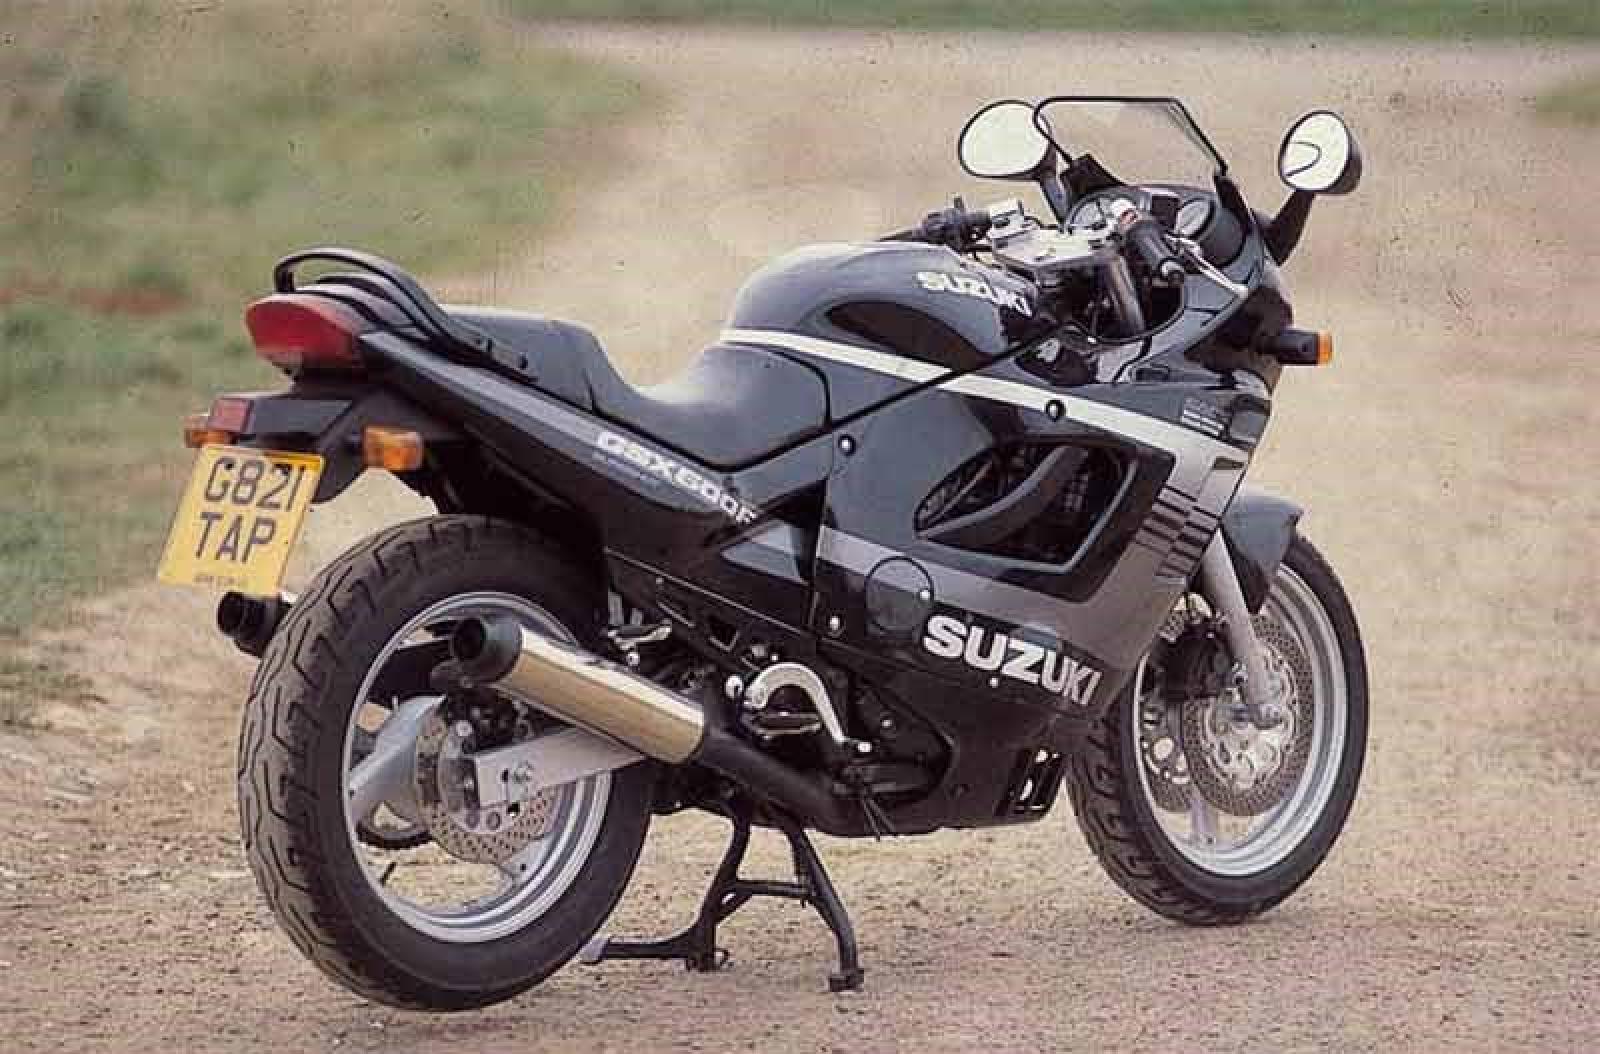 1989 Suzuki GSX 600 F (reduced effect)